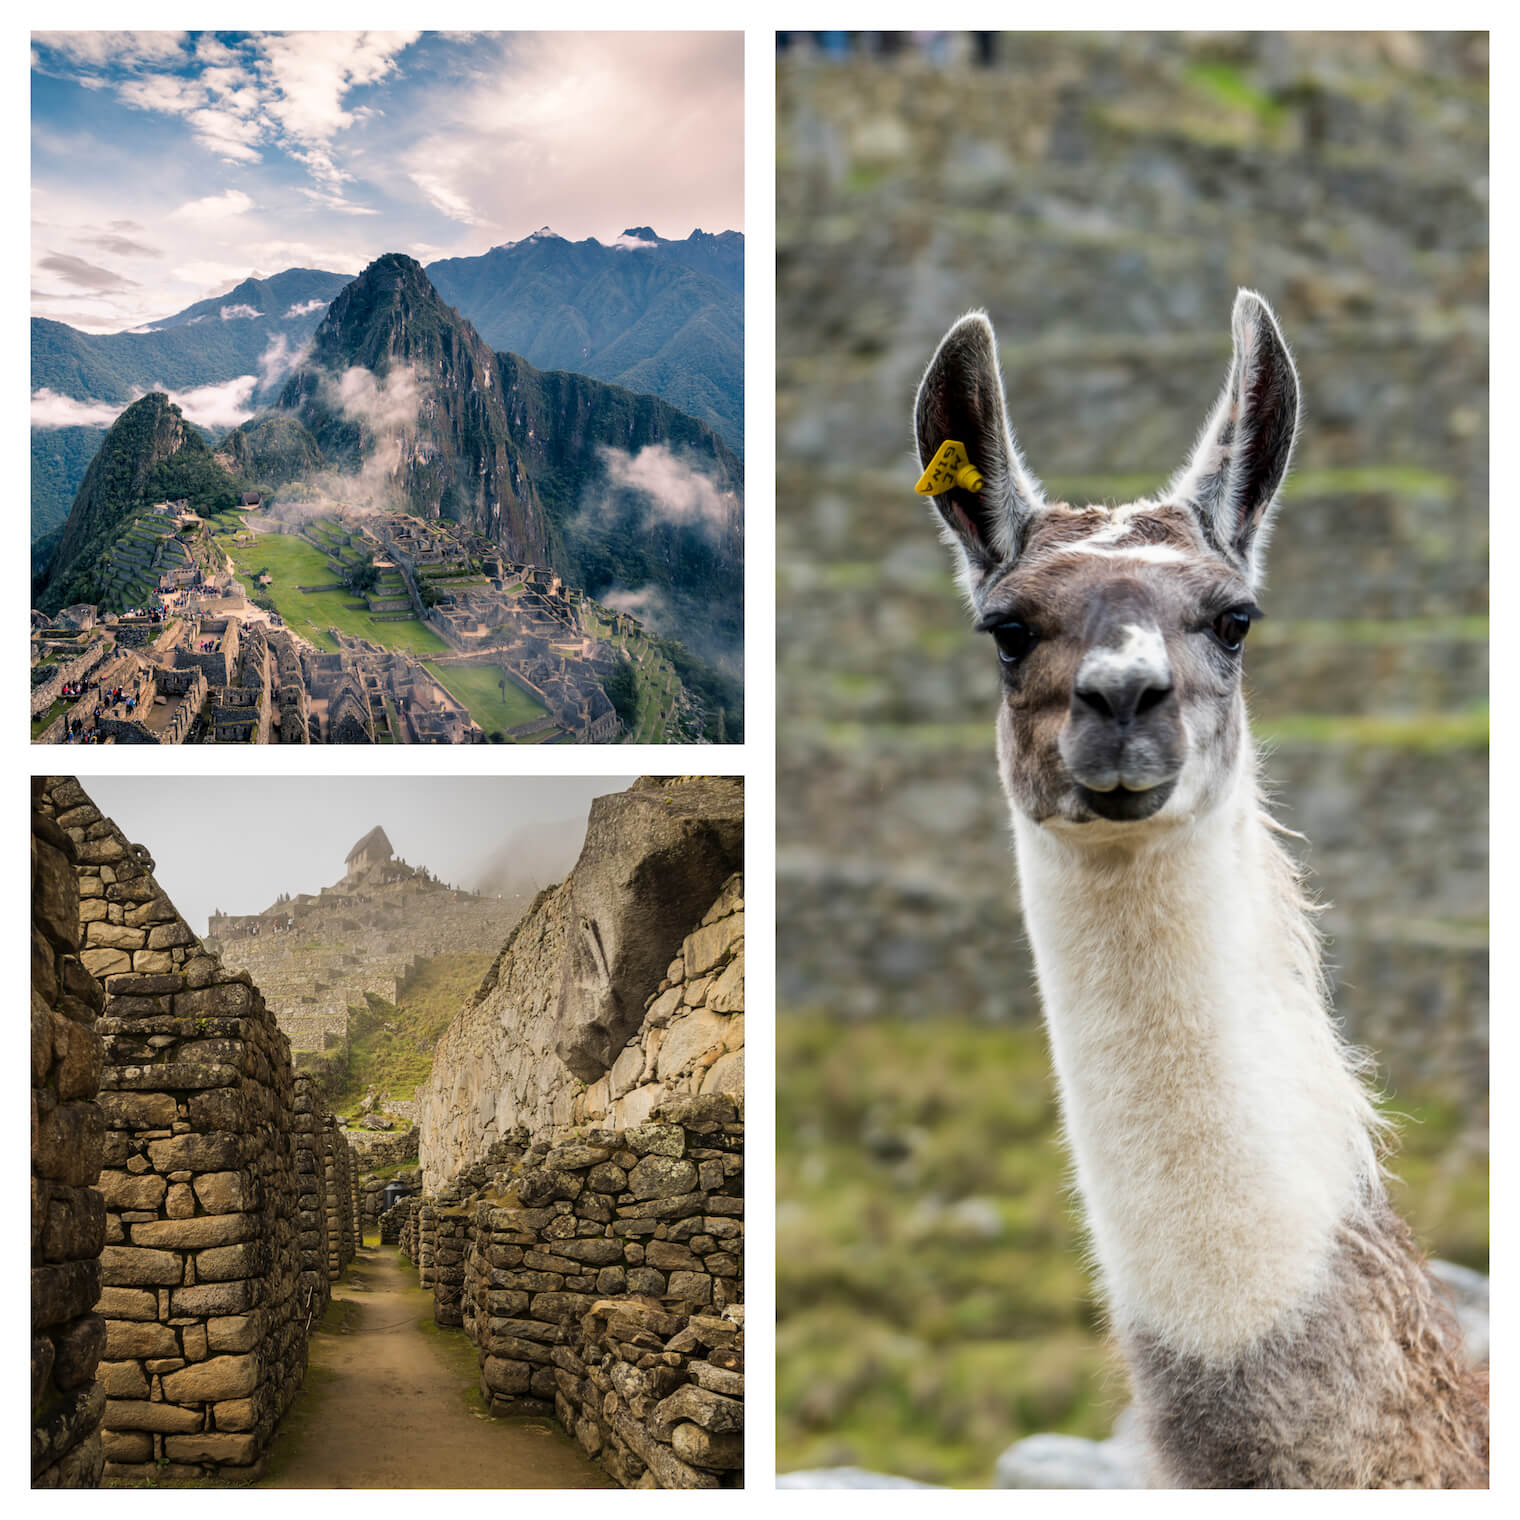 3 fotos: na esquerda superior, a famosa vista da rocha de Machu Picchu com as ruinas logo abaixo. Esquerda inferior: vista das ruinas. Em destaque na direita: uma lhama olhando para a câmera.